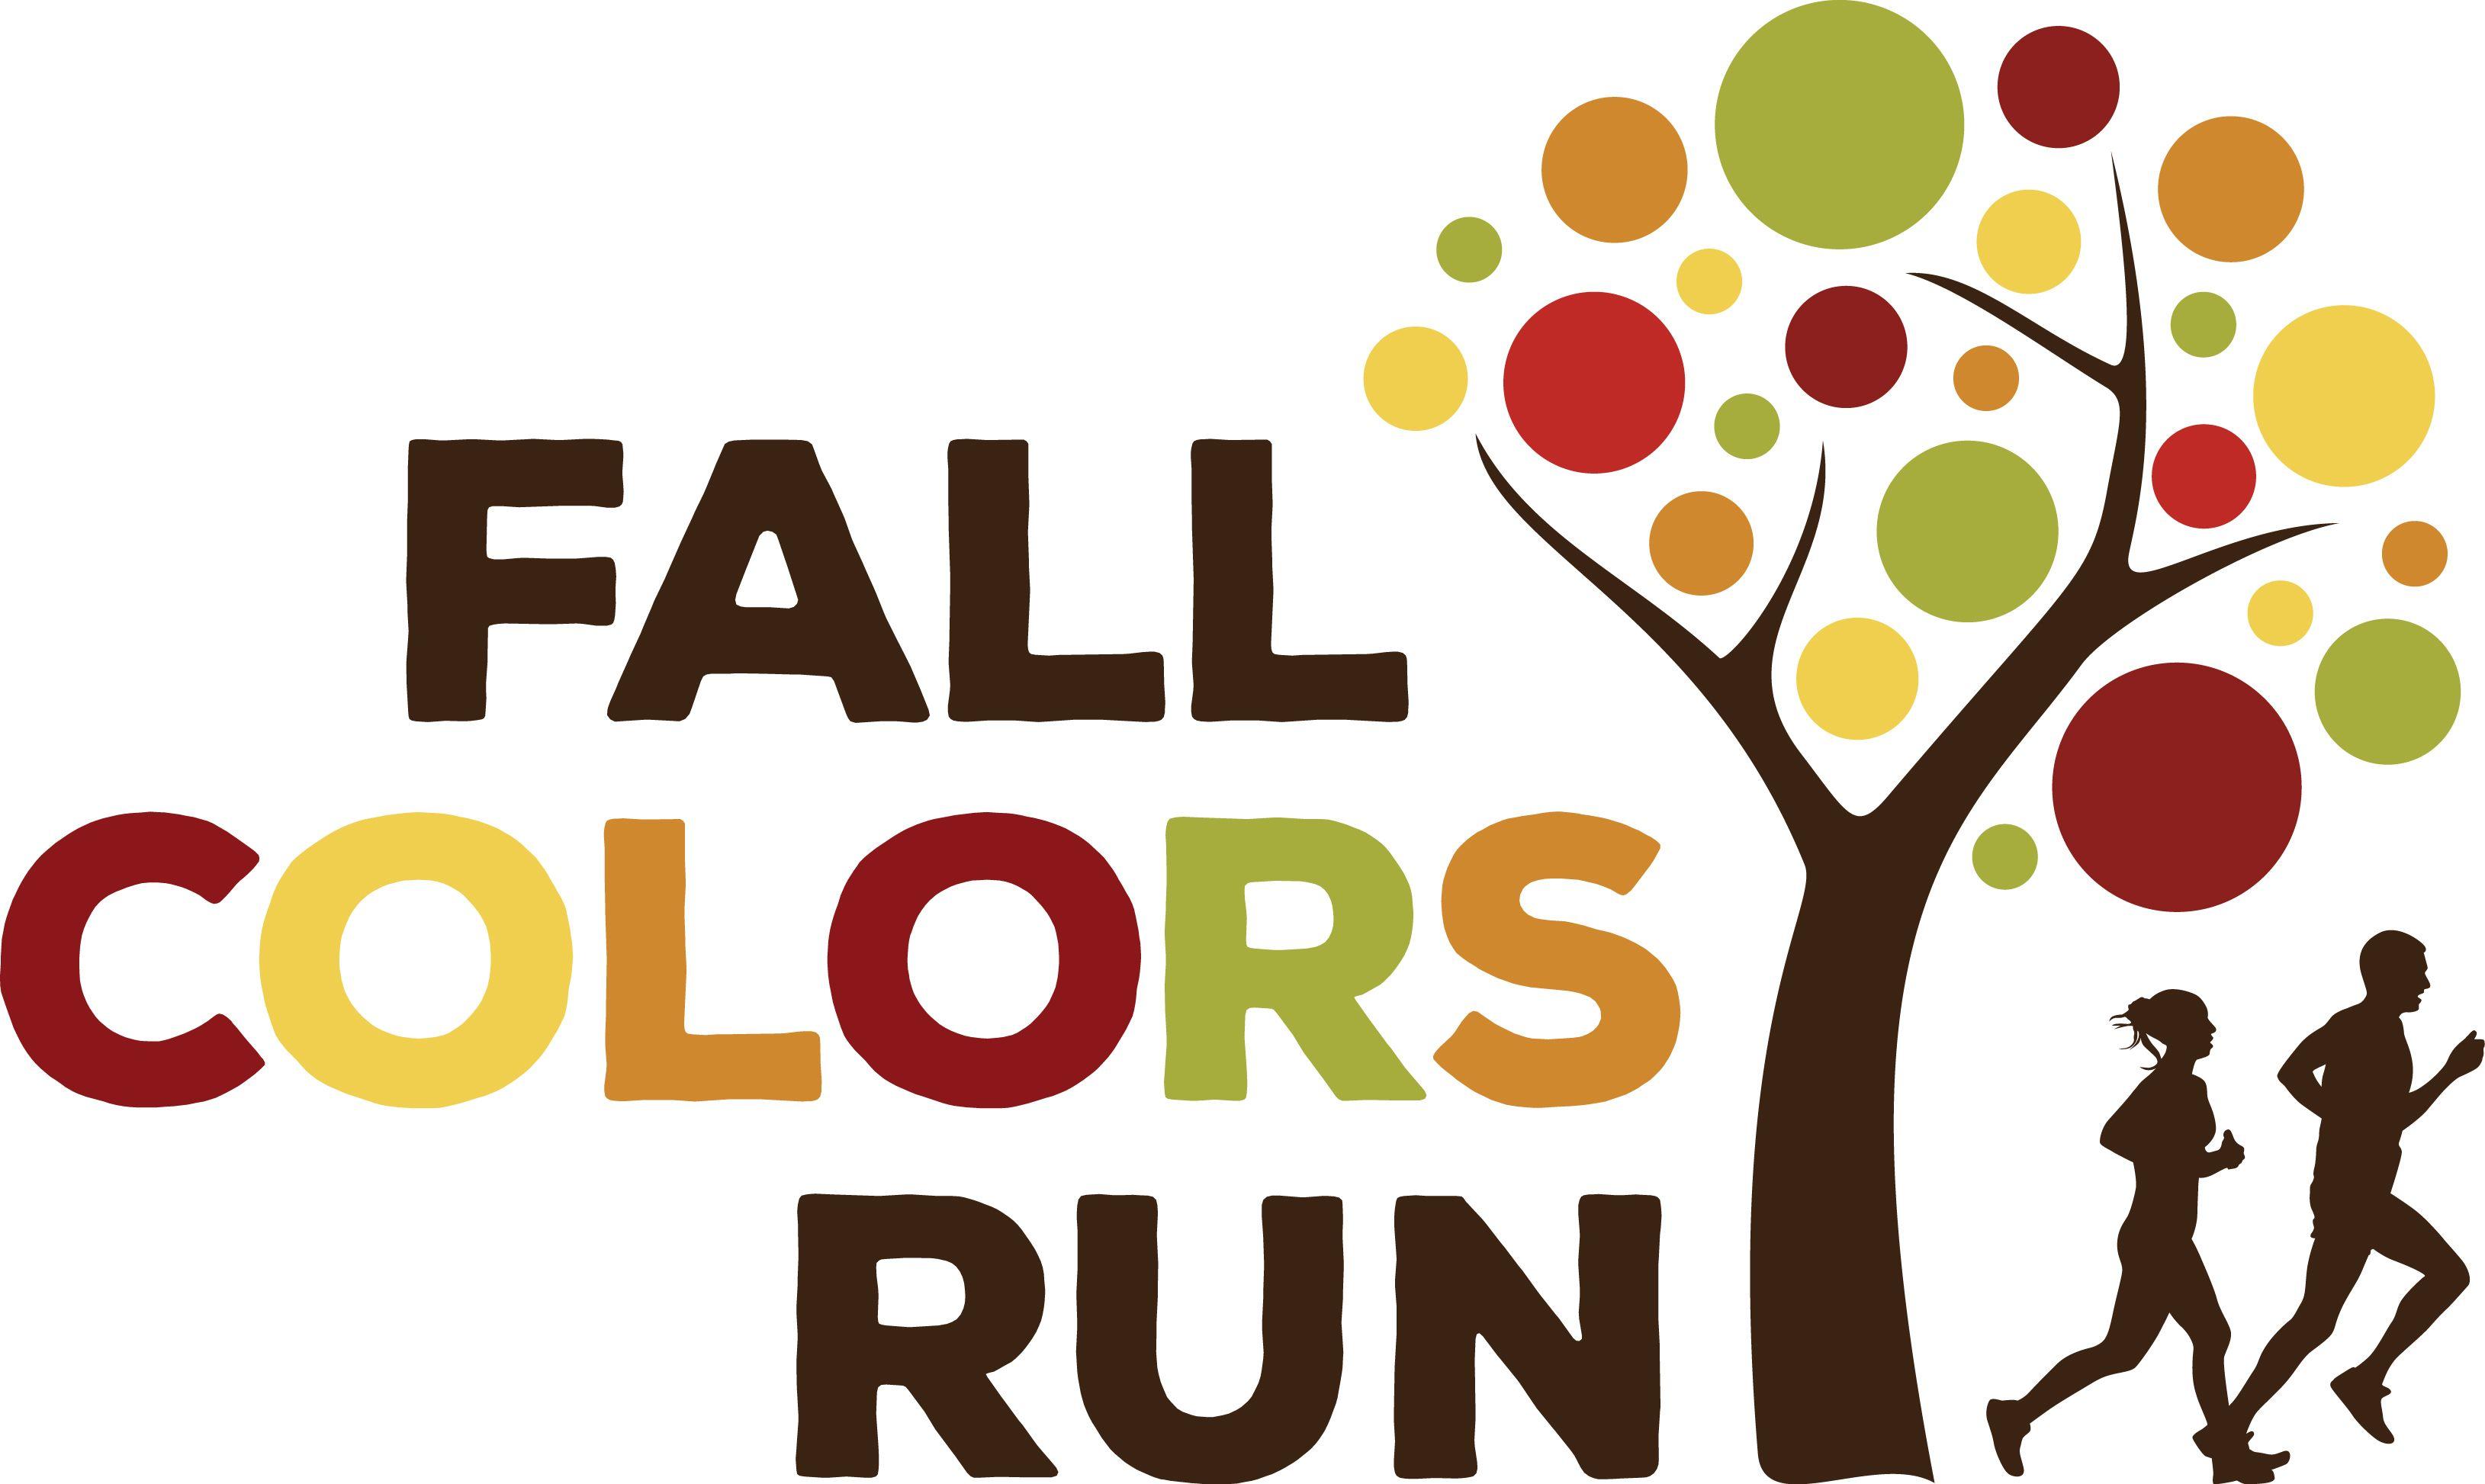 Fall Logo - Fall Colors Run